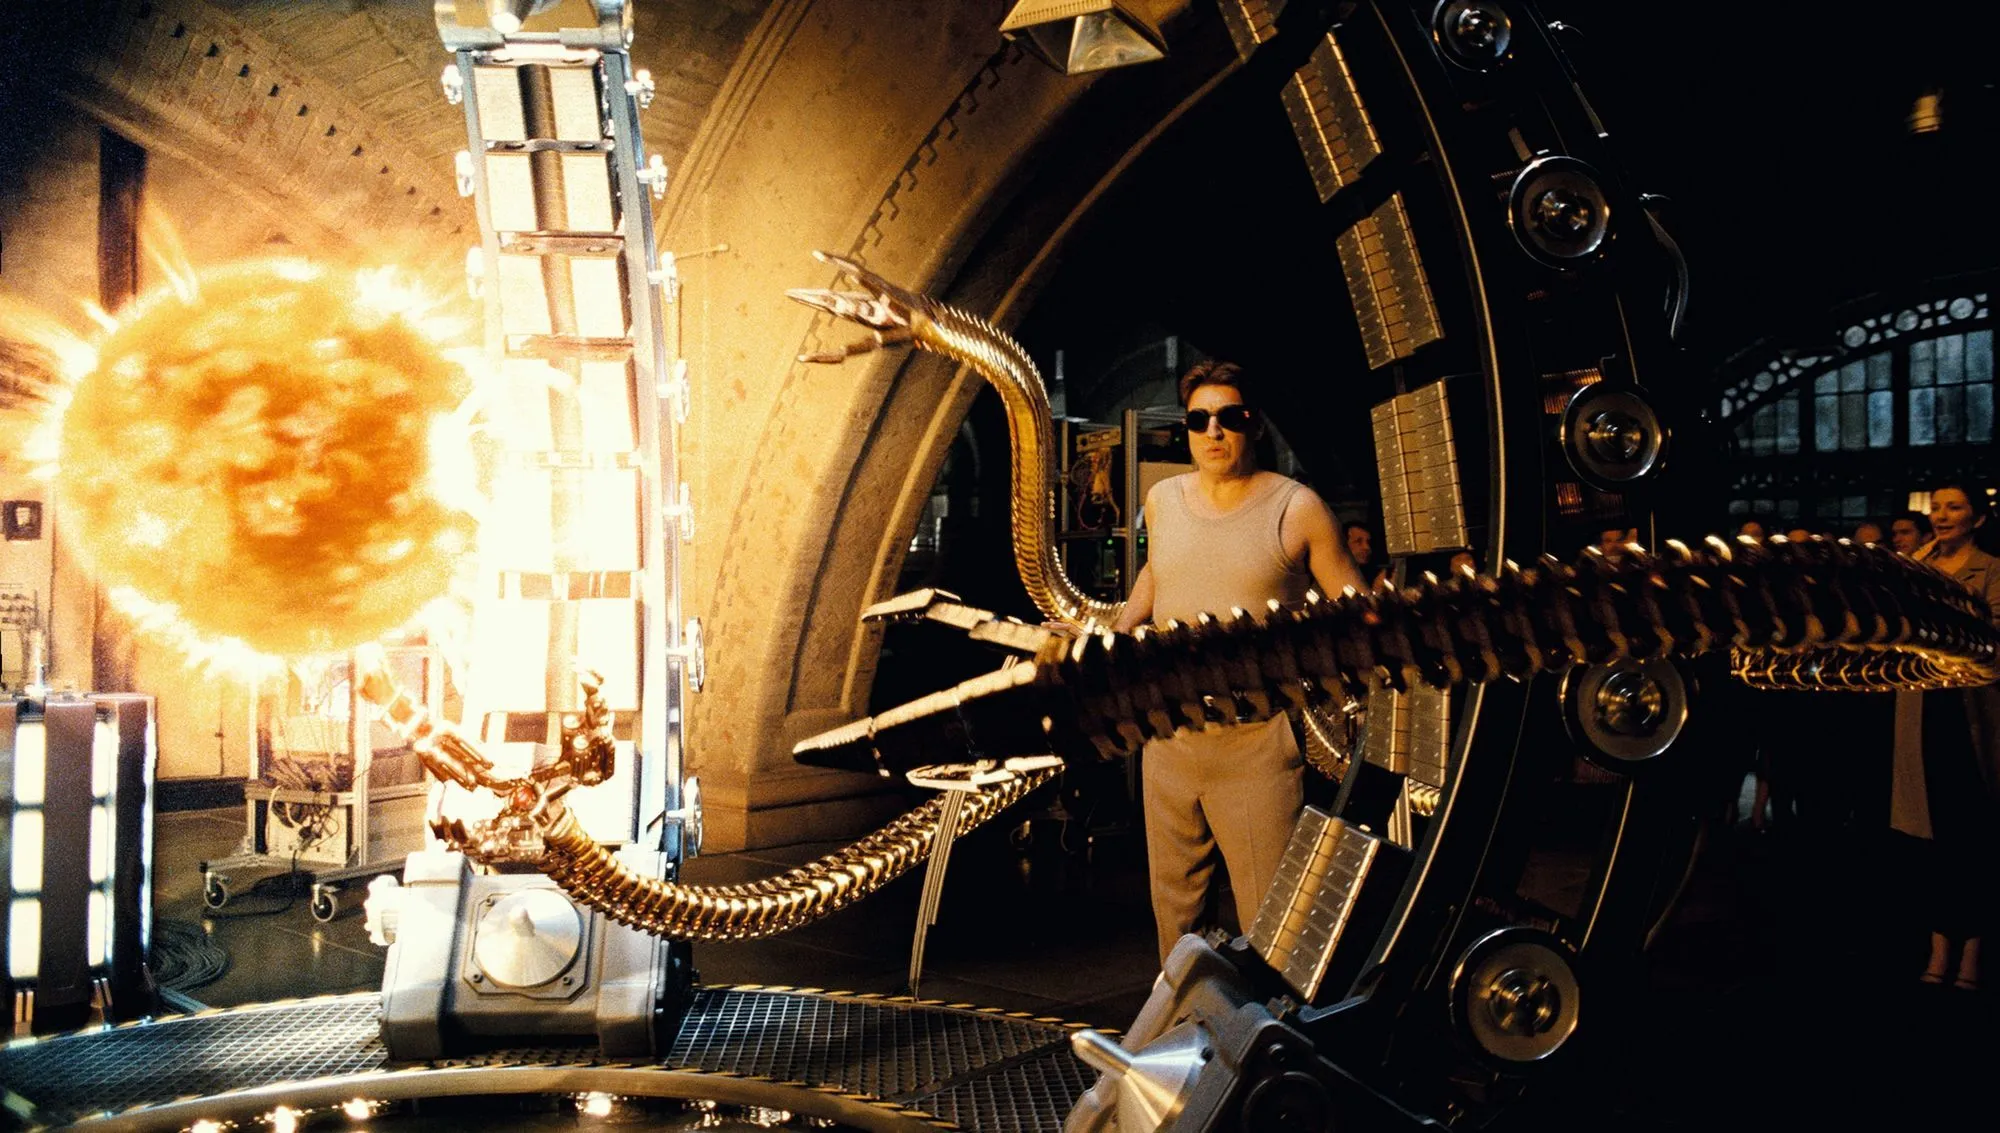 Dans le film Spiderman 2, de Sam Raimi, le Docteur Octavius crée une étoile en laboratoire pour disposer d'une source d'énergie quasi inépuisable.